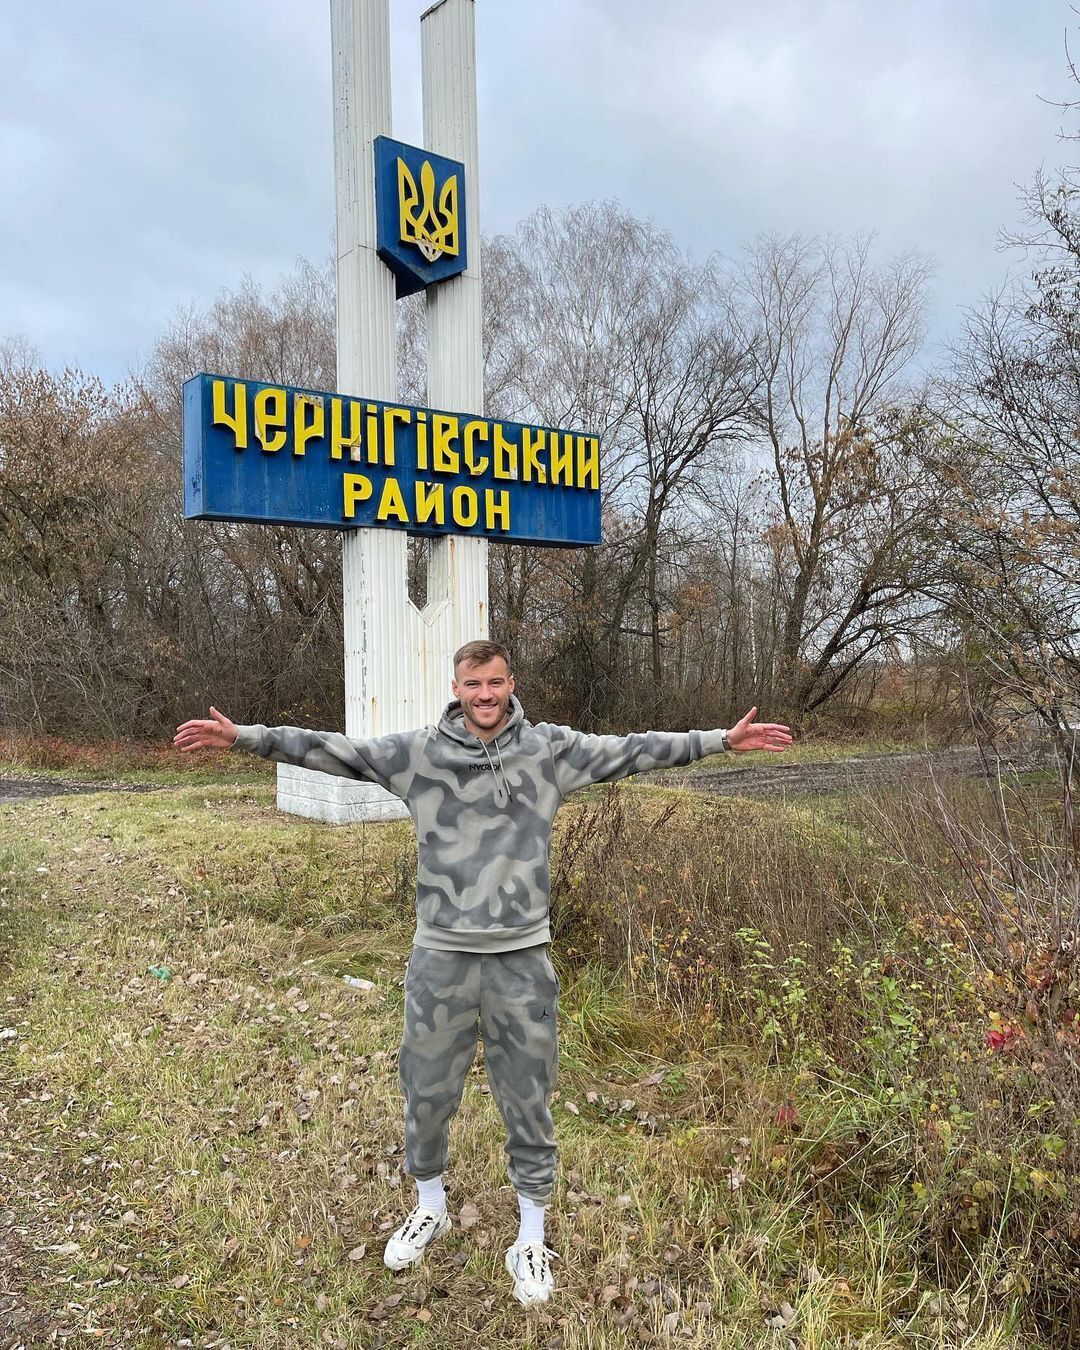 24 мільйони за місяць та своя армія дронів: як українські зірки спорту допомагають під час війни